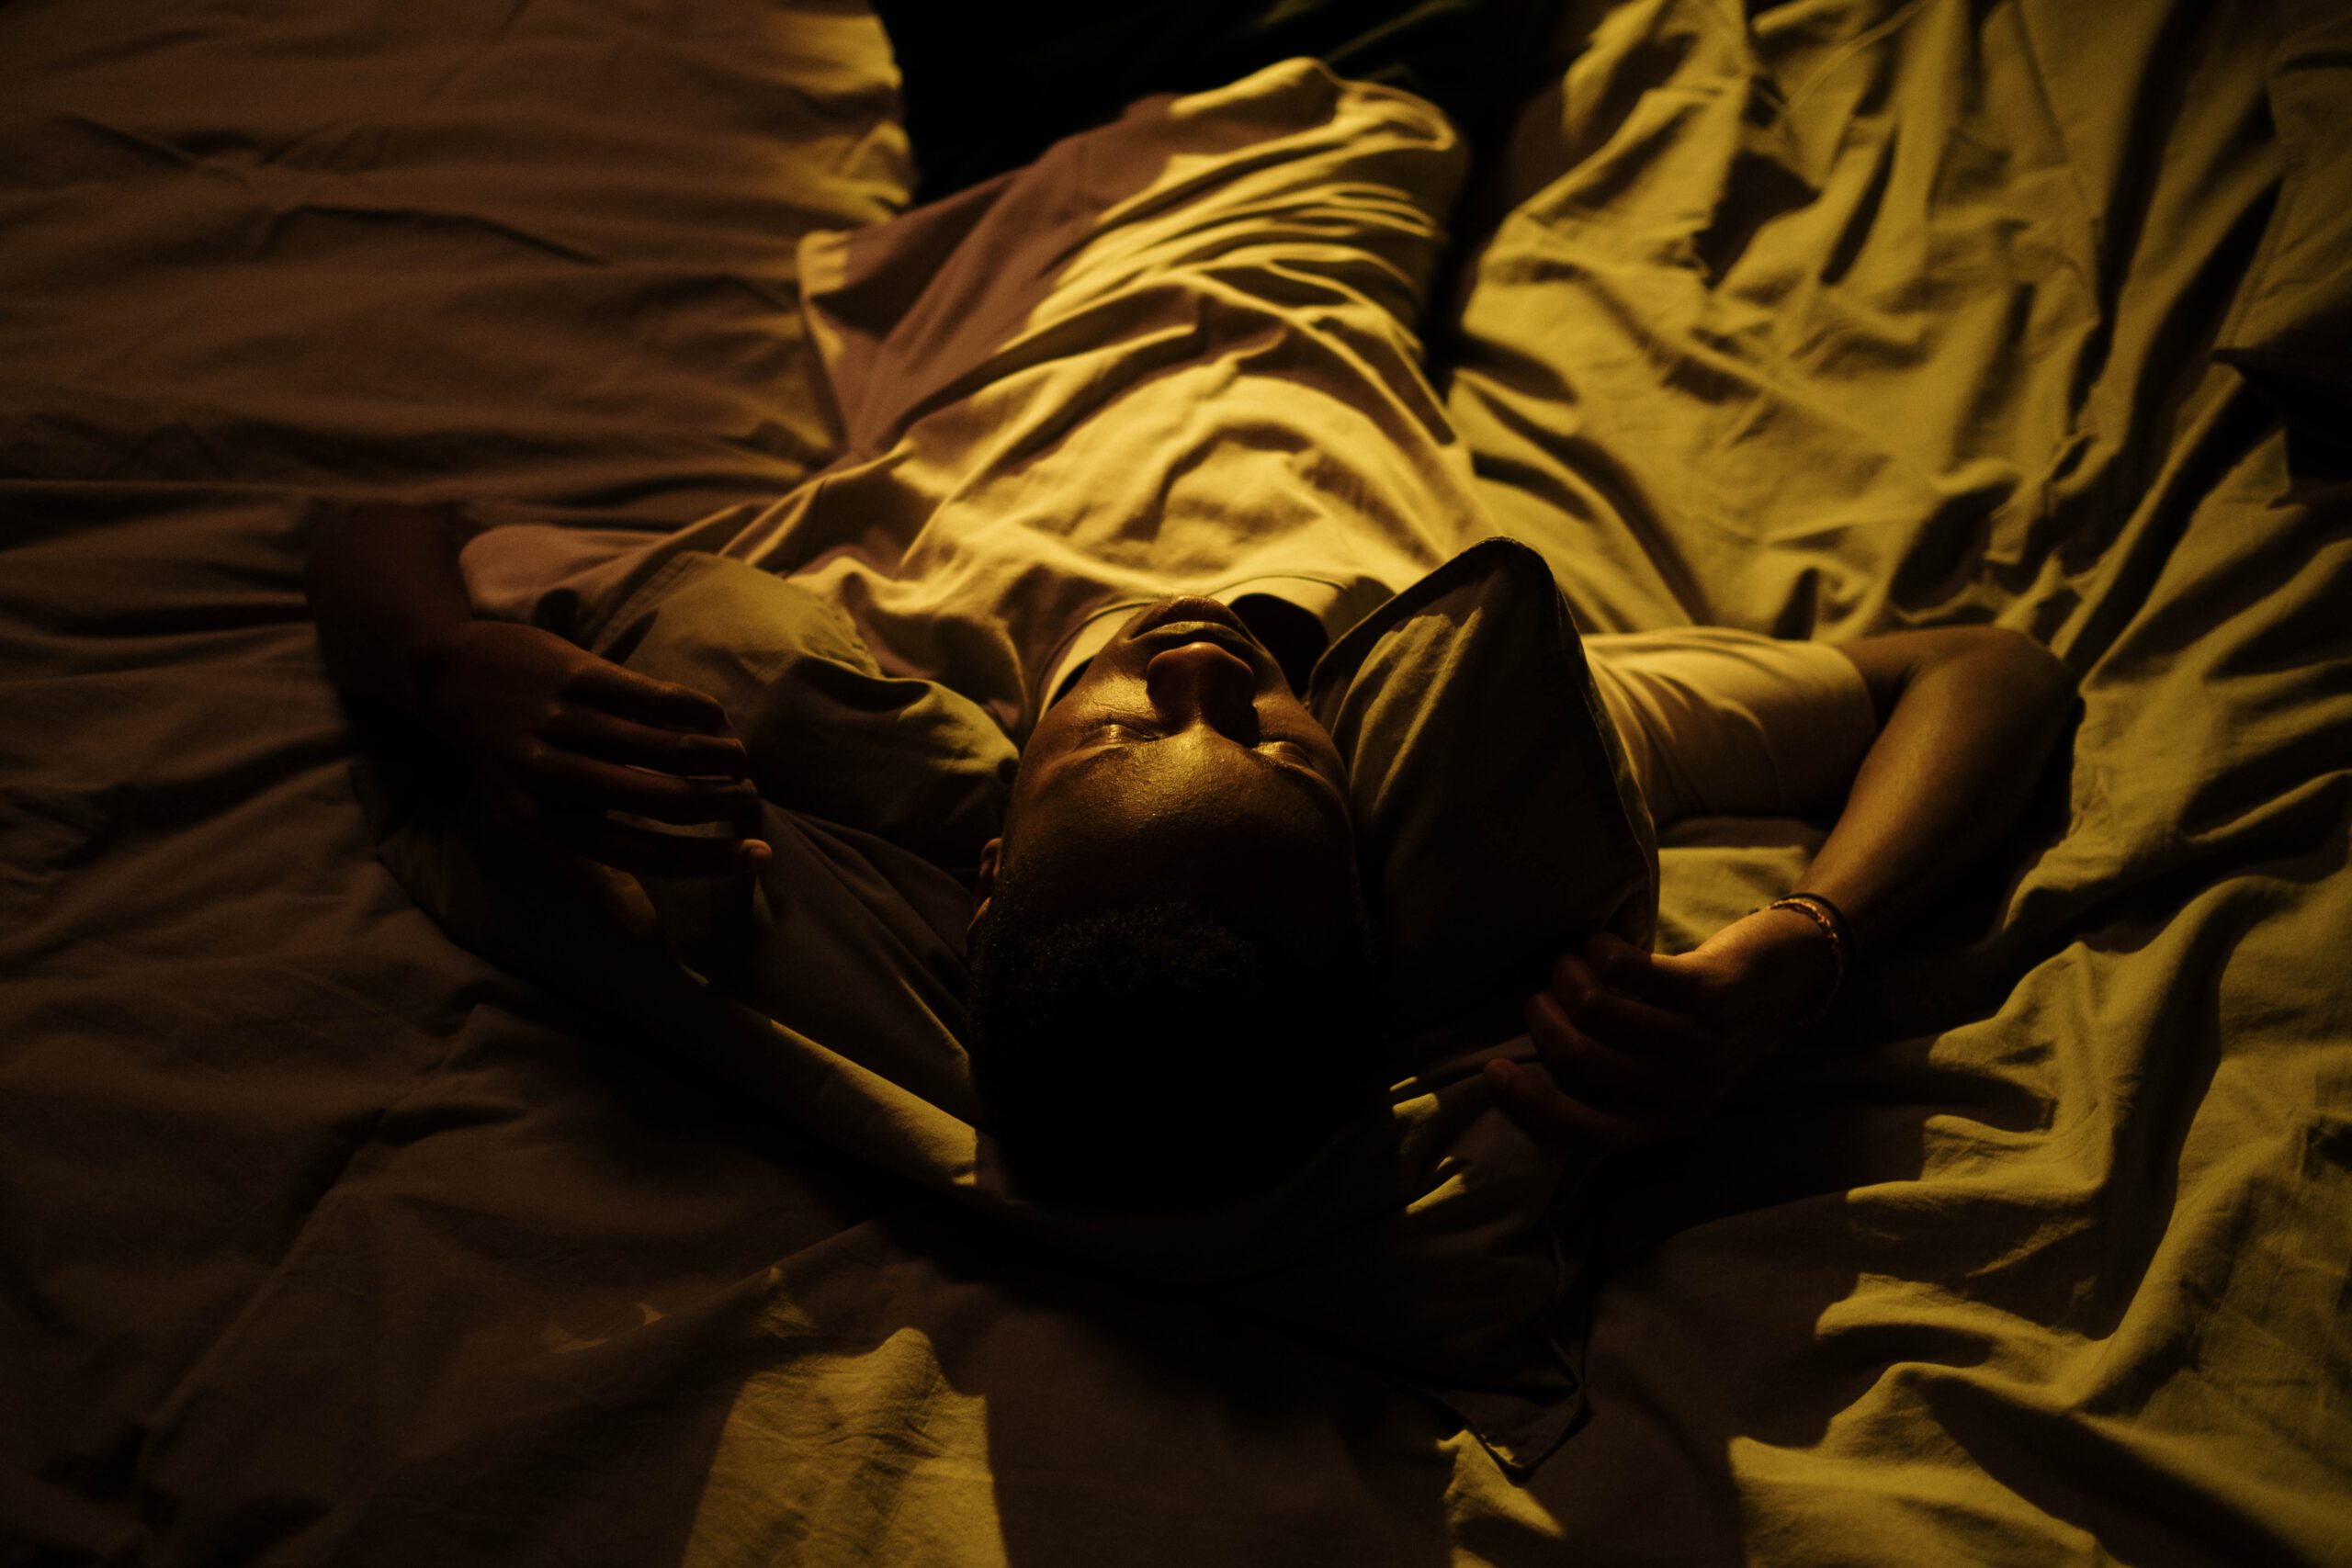 "Ansiedad y preocupación: Chico negro tumbado en una cama blanca durante la noche"